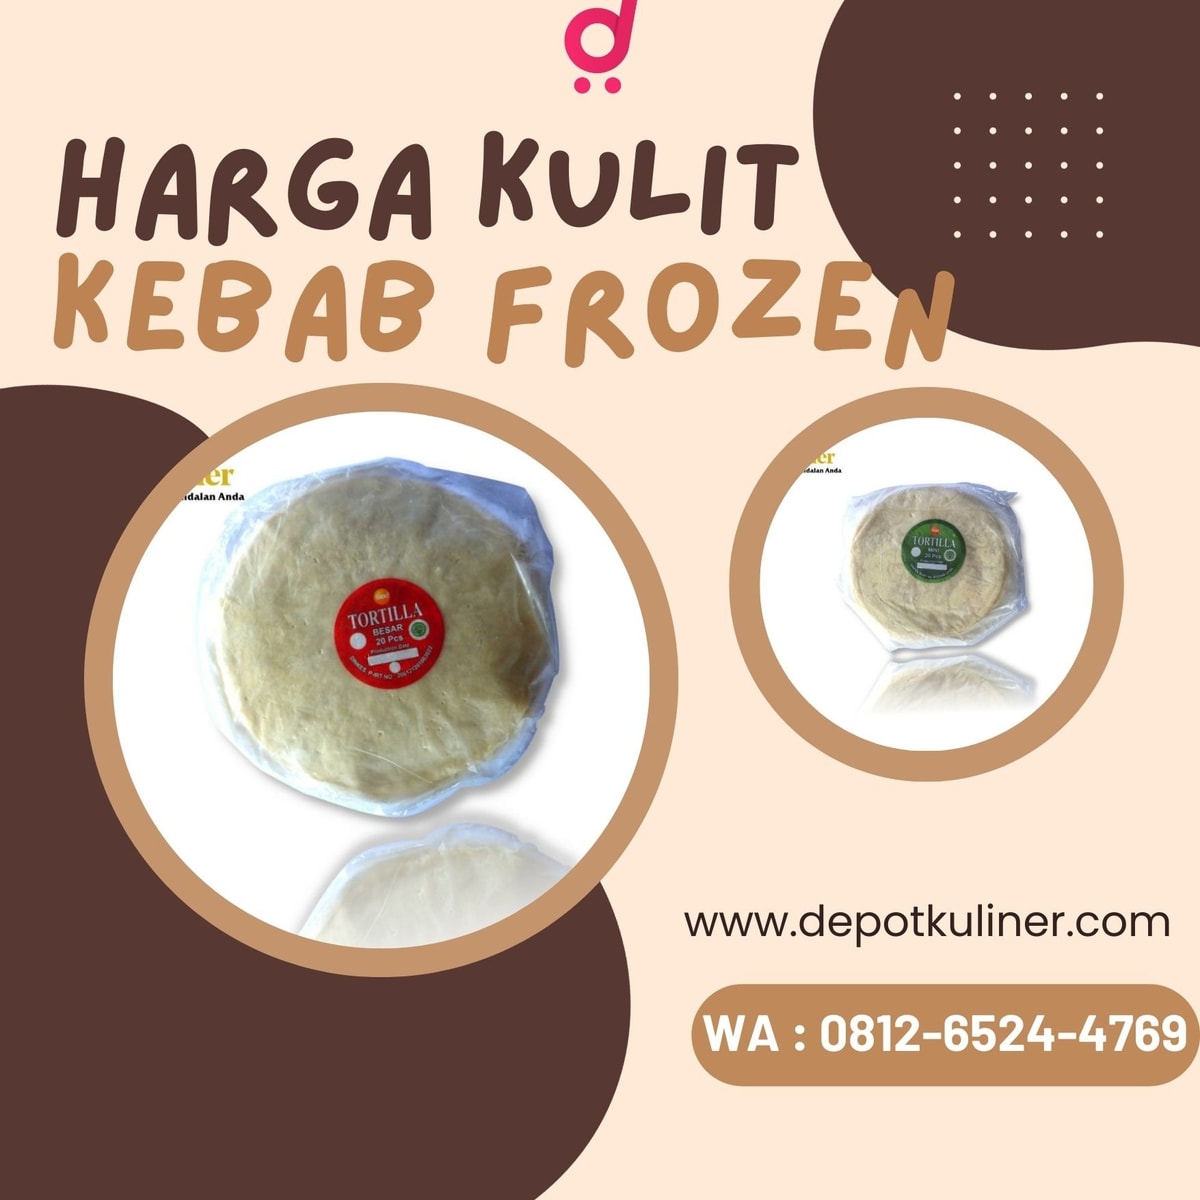 LEZAT NIKMAT, Call 0812-6524-4769, Harga Kulit Kebab Frozen